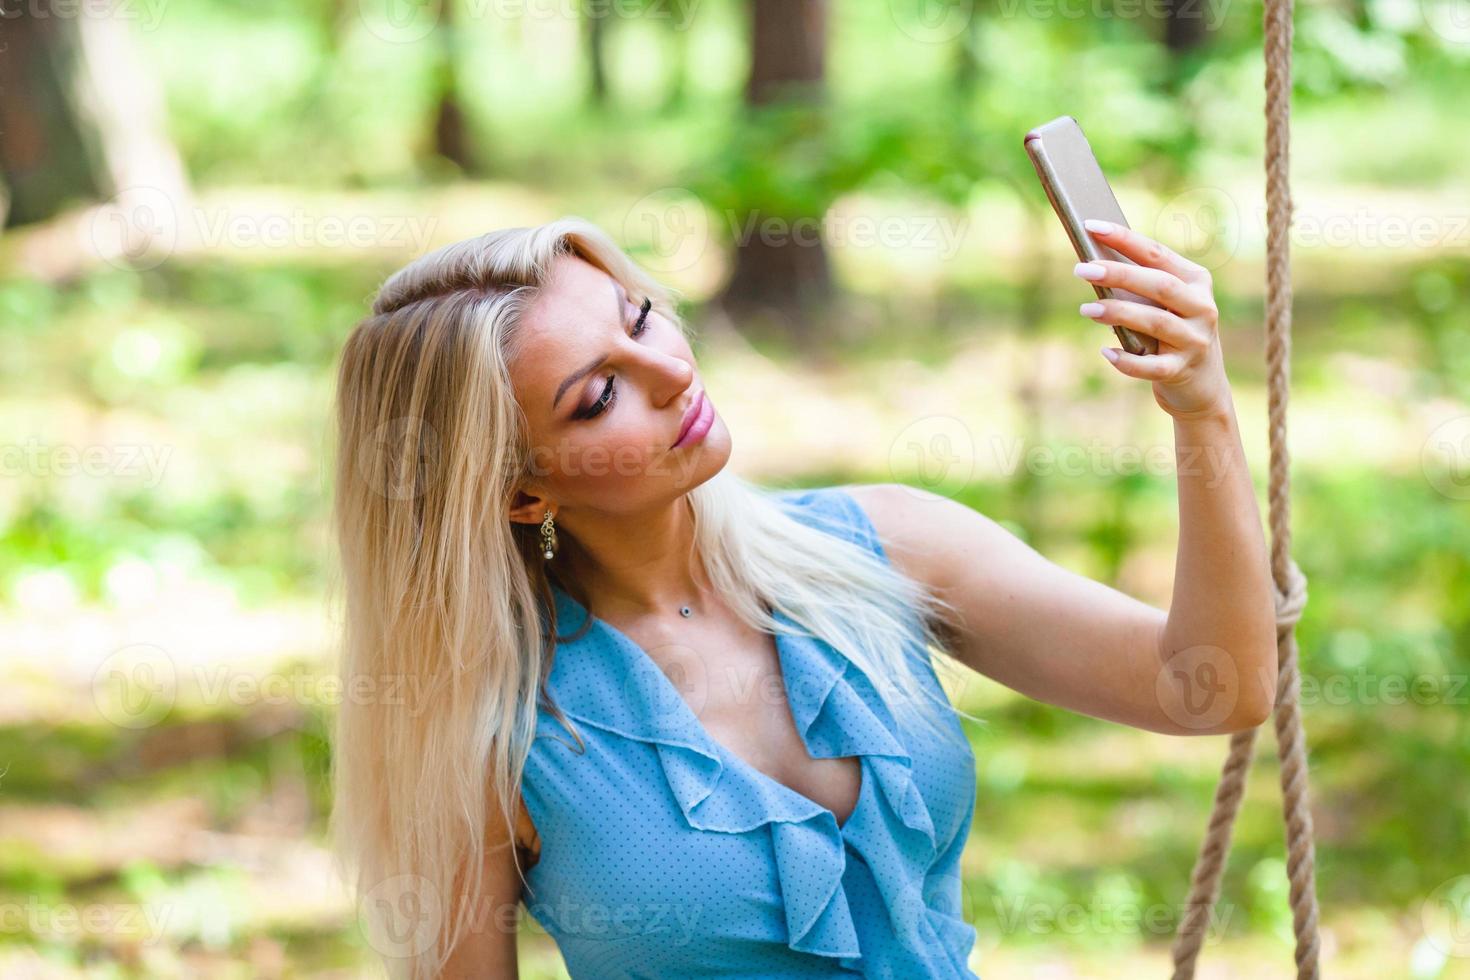 mooi blond vrouw in blauw jurk gebruik makend van smartphone naar nemen selfie foto